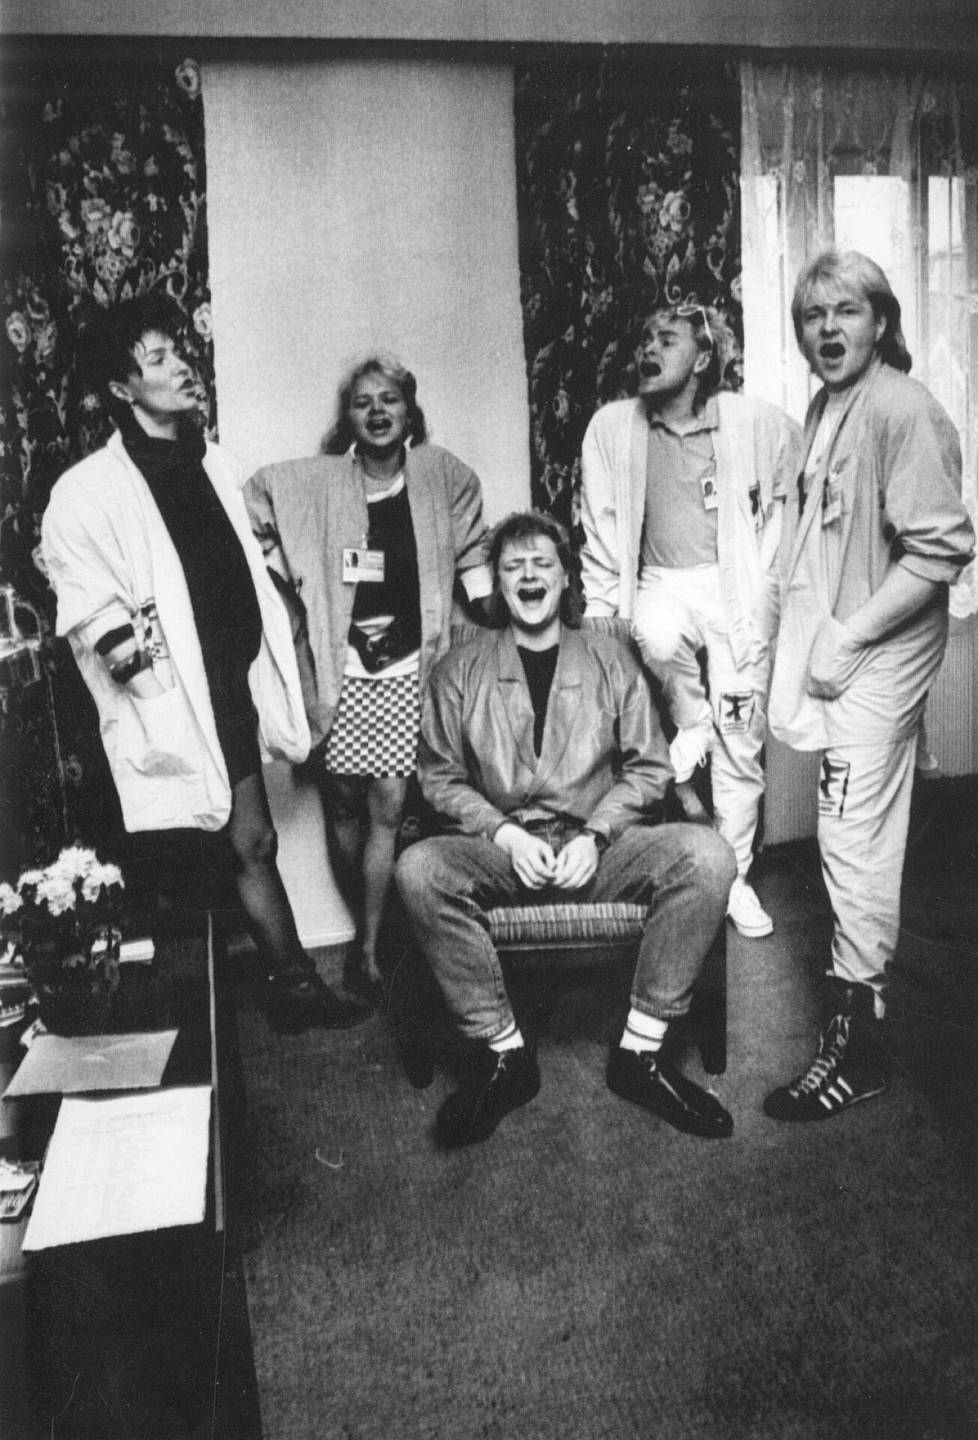 Tässä ollaan Norjassa Kari Kuivalaisen mukana vuonna 1986. Vasemmalta oikealle: Anita Pajunen, Kati Bergman, Kari Kuivalainen, Rele Kosunen ja Jokke Seppälä.